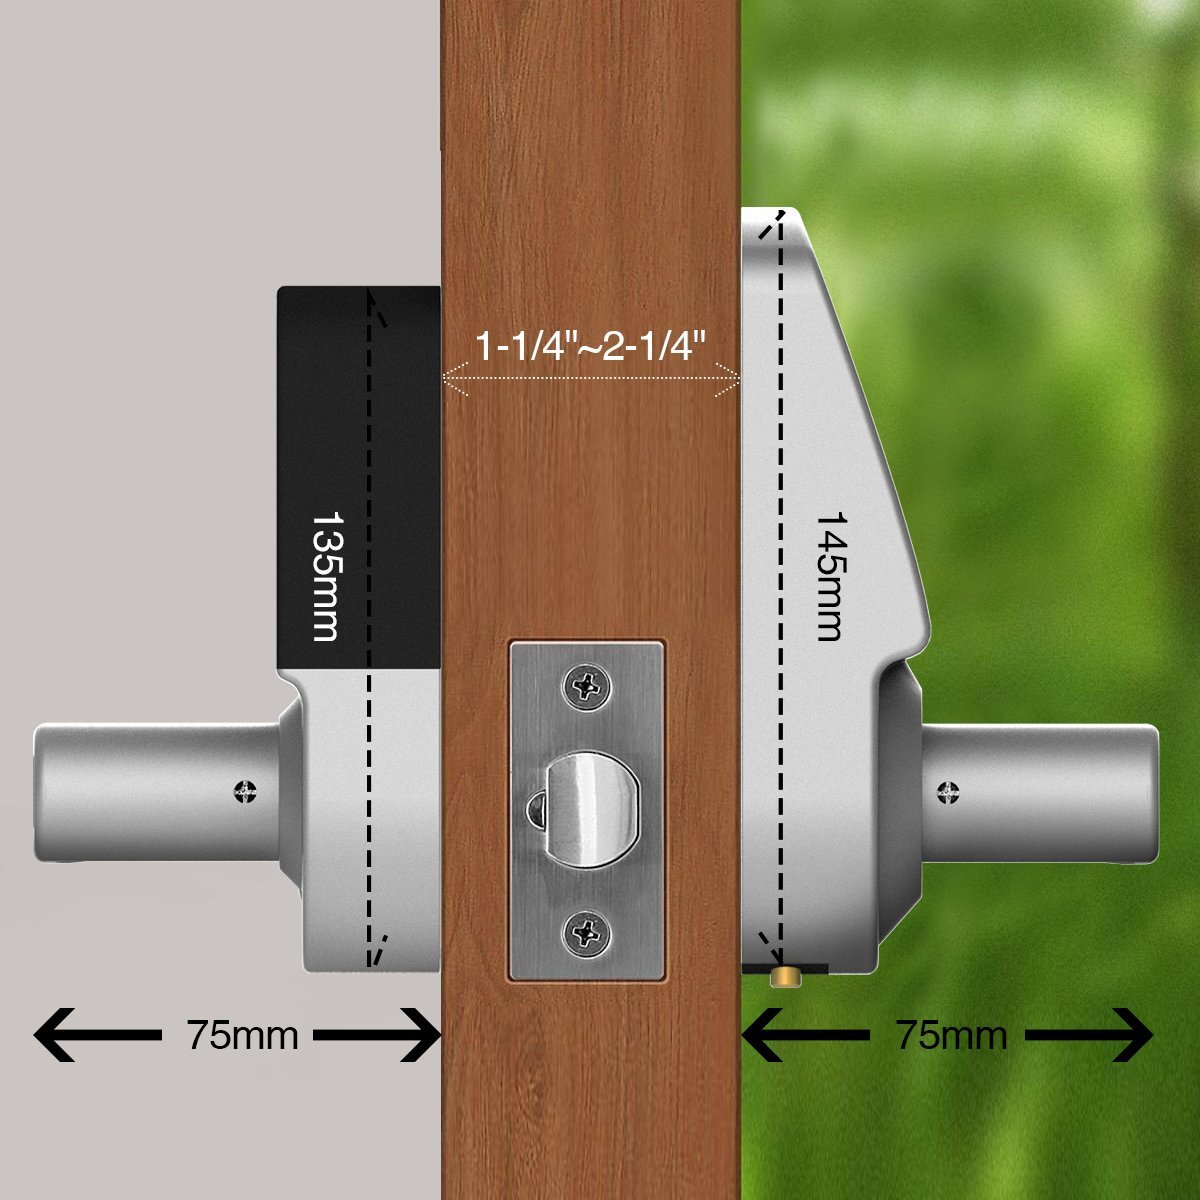  Electronic Keyless Touchscreen Smart Door Lock